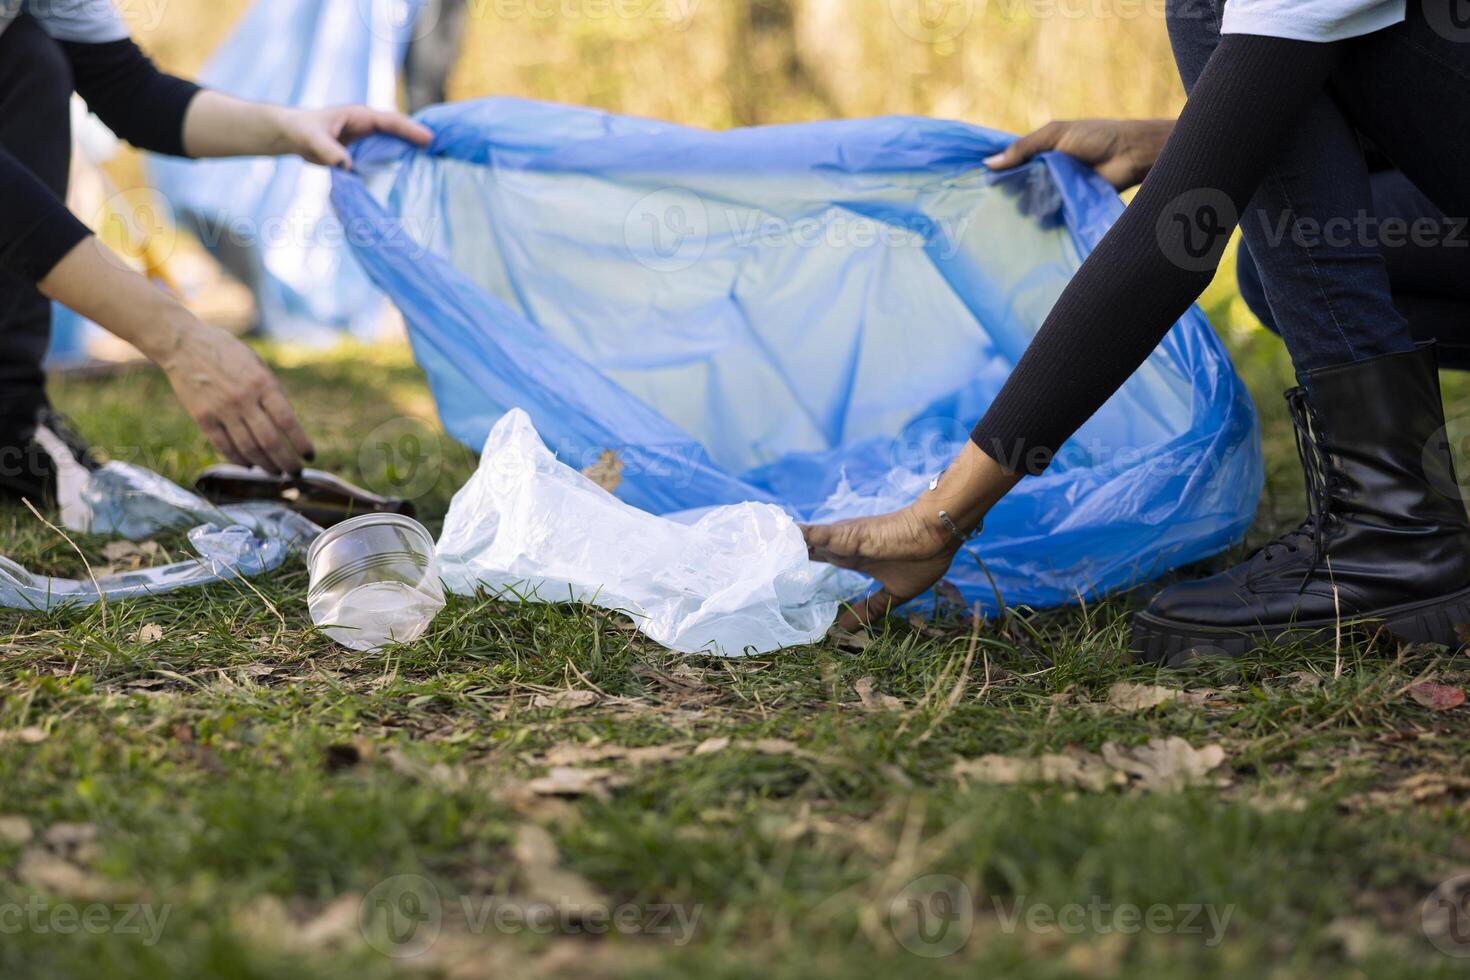 femmes bénévoles nettoyage le forêt par cueillette en haut poubelle dans Sacs, recyclage Plastique déchets pour une durable mode de vie. gens collecte ordures, faire du bénévolat contre pollution. photo